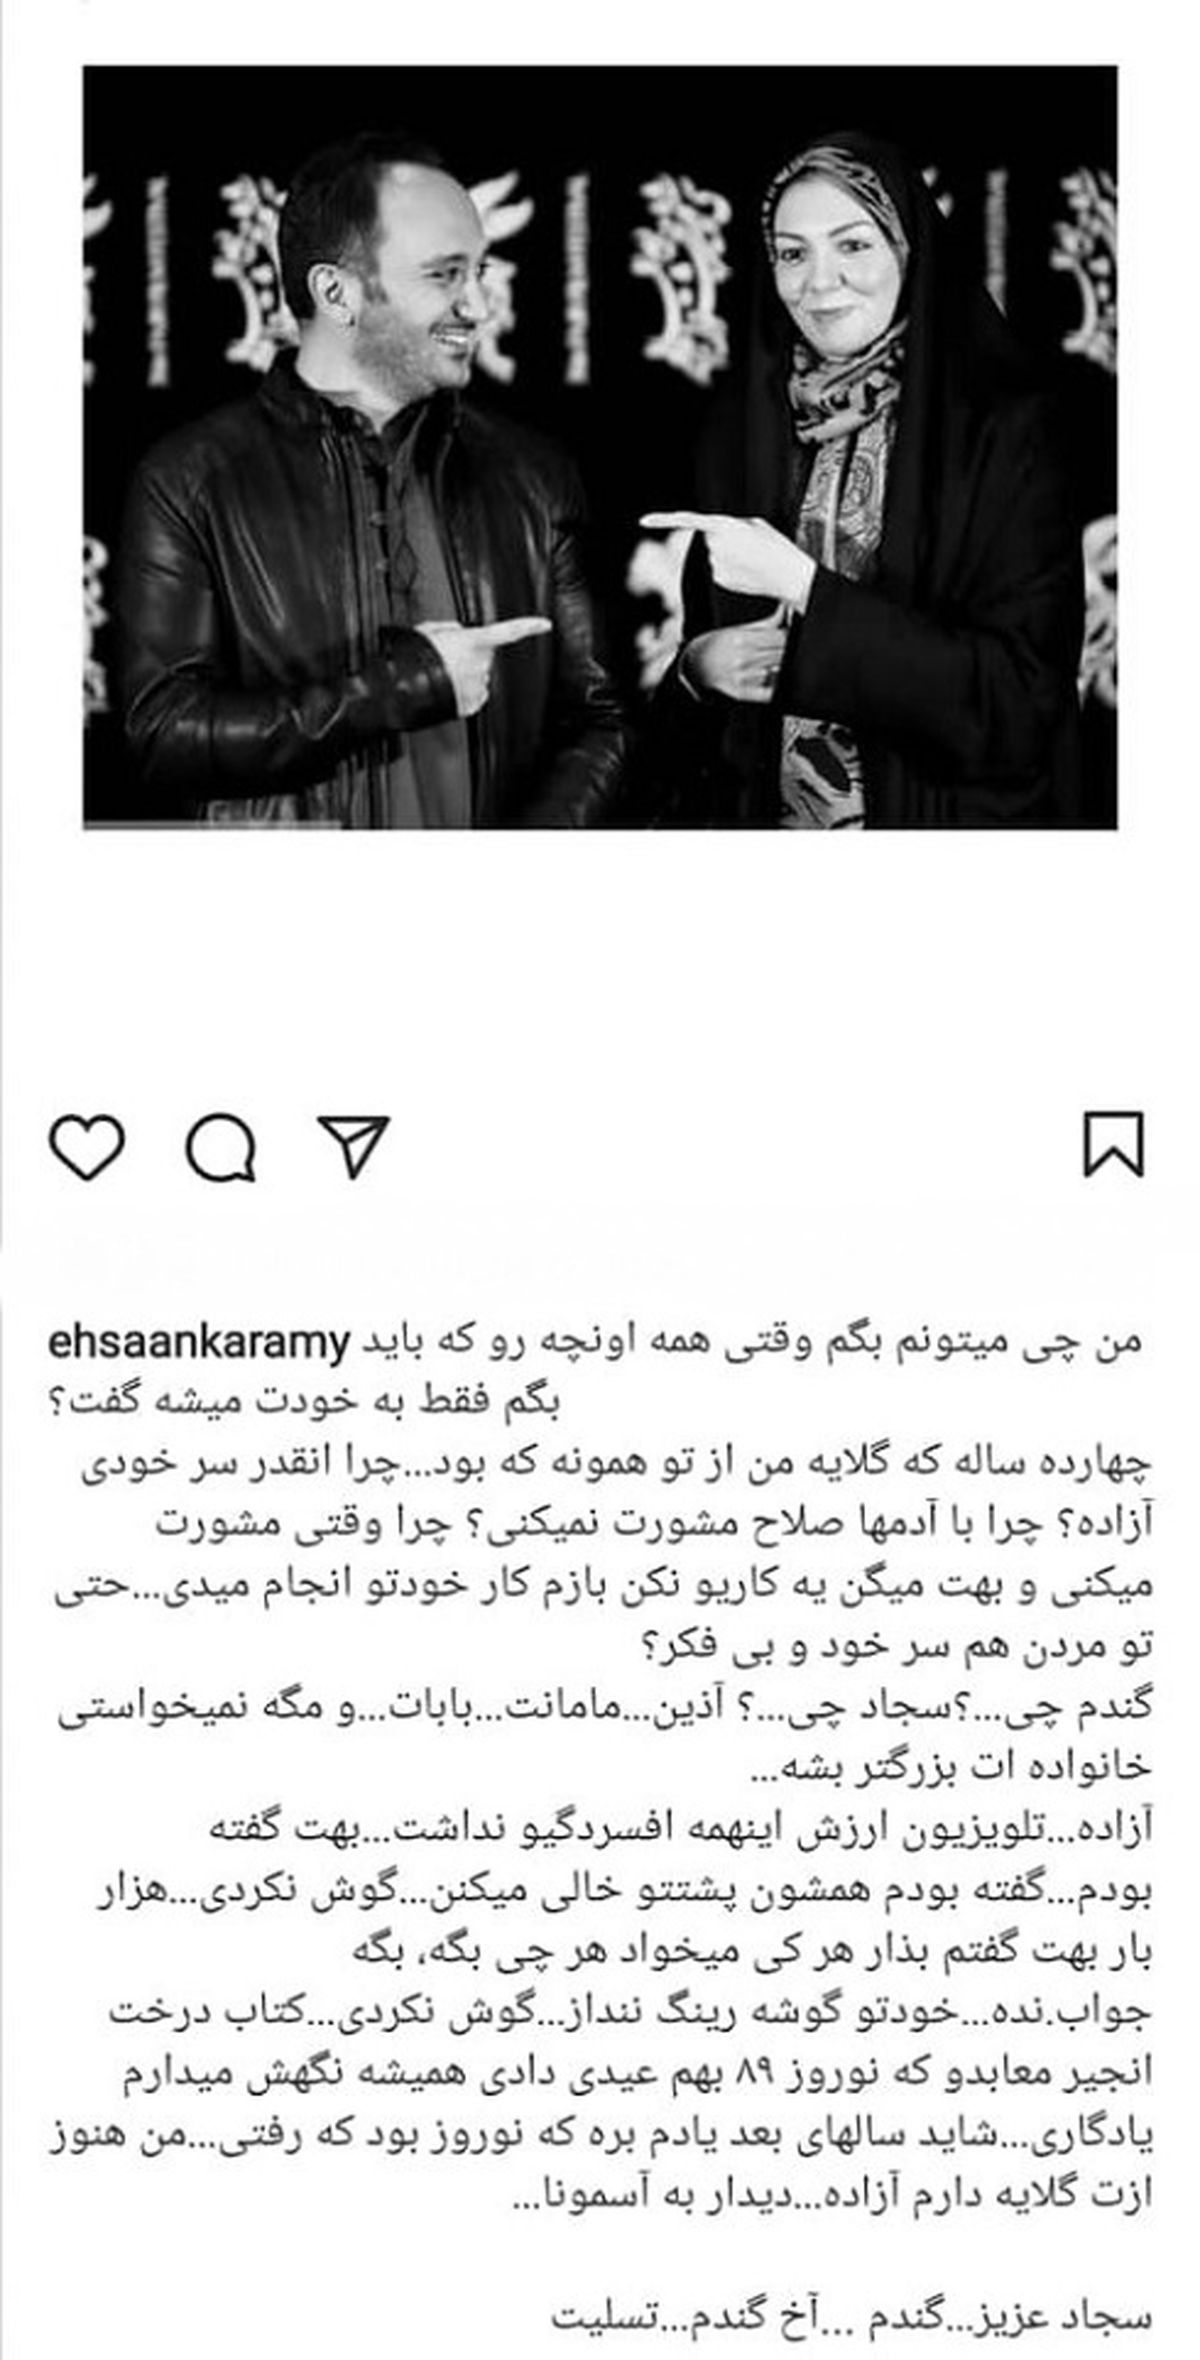 ehsan-karami